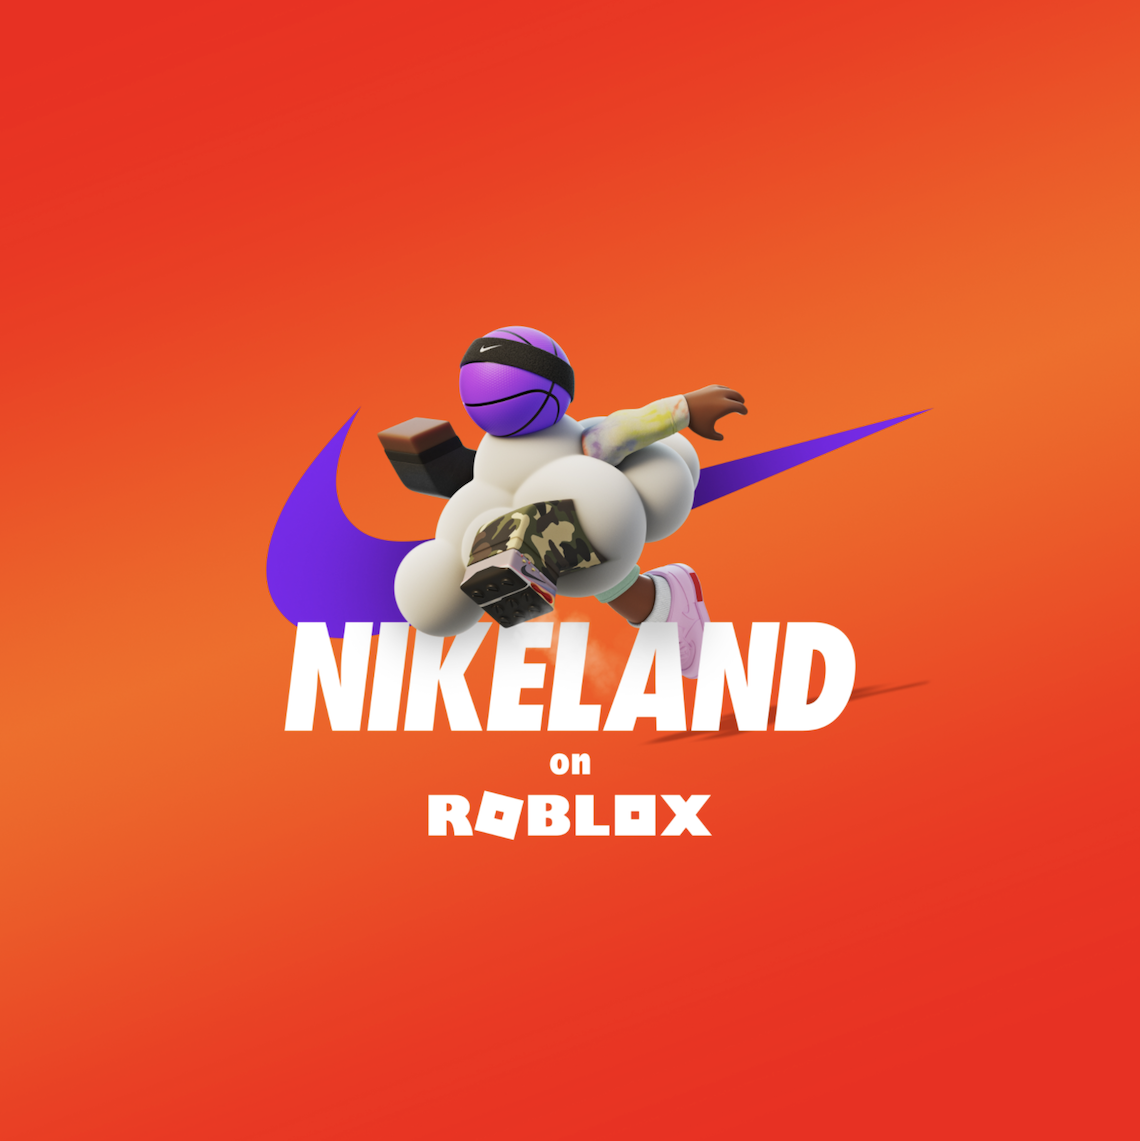 Nikeland Roblox 7